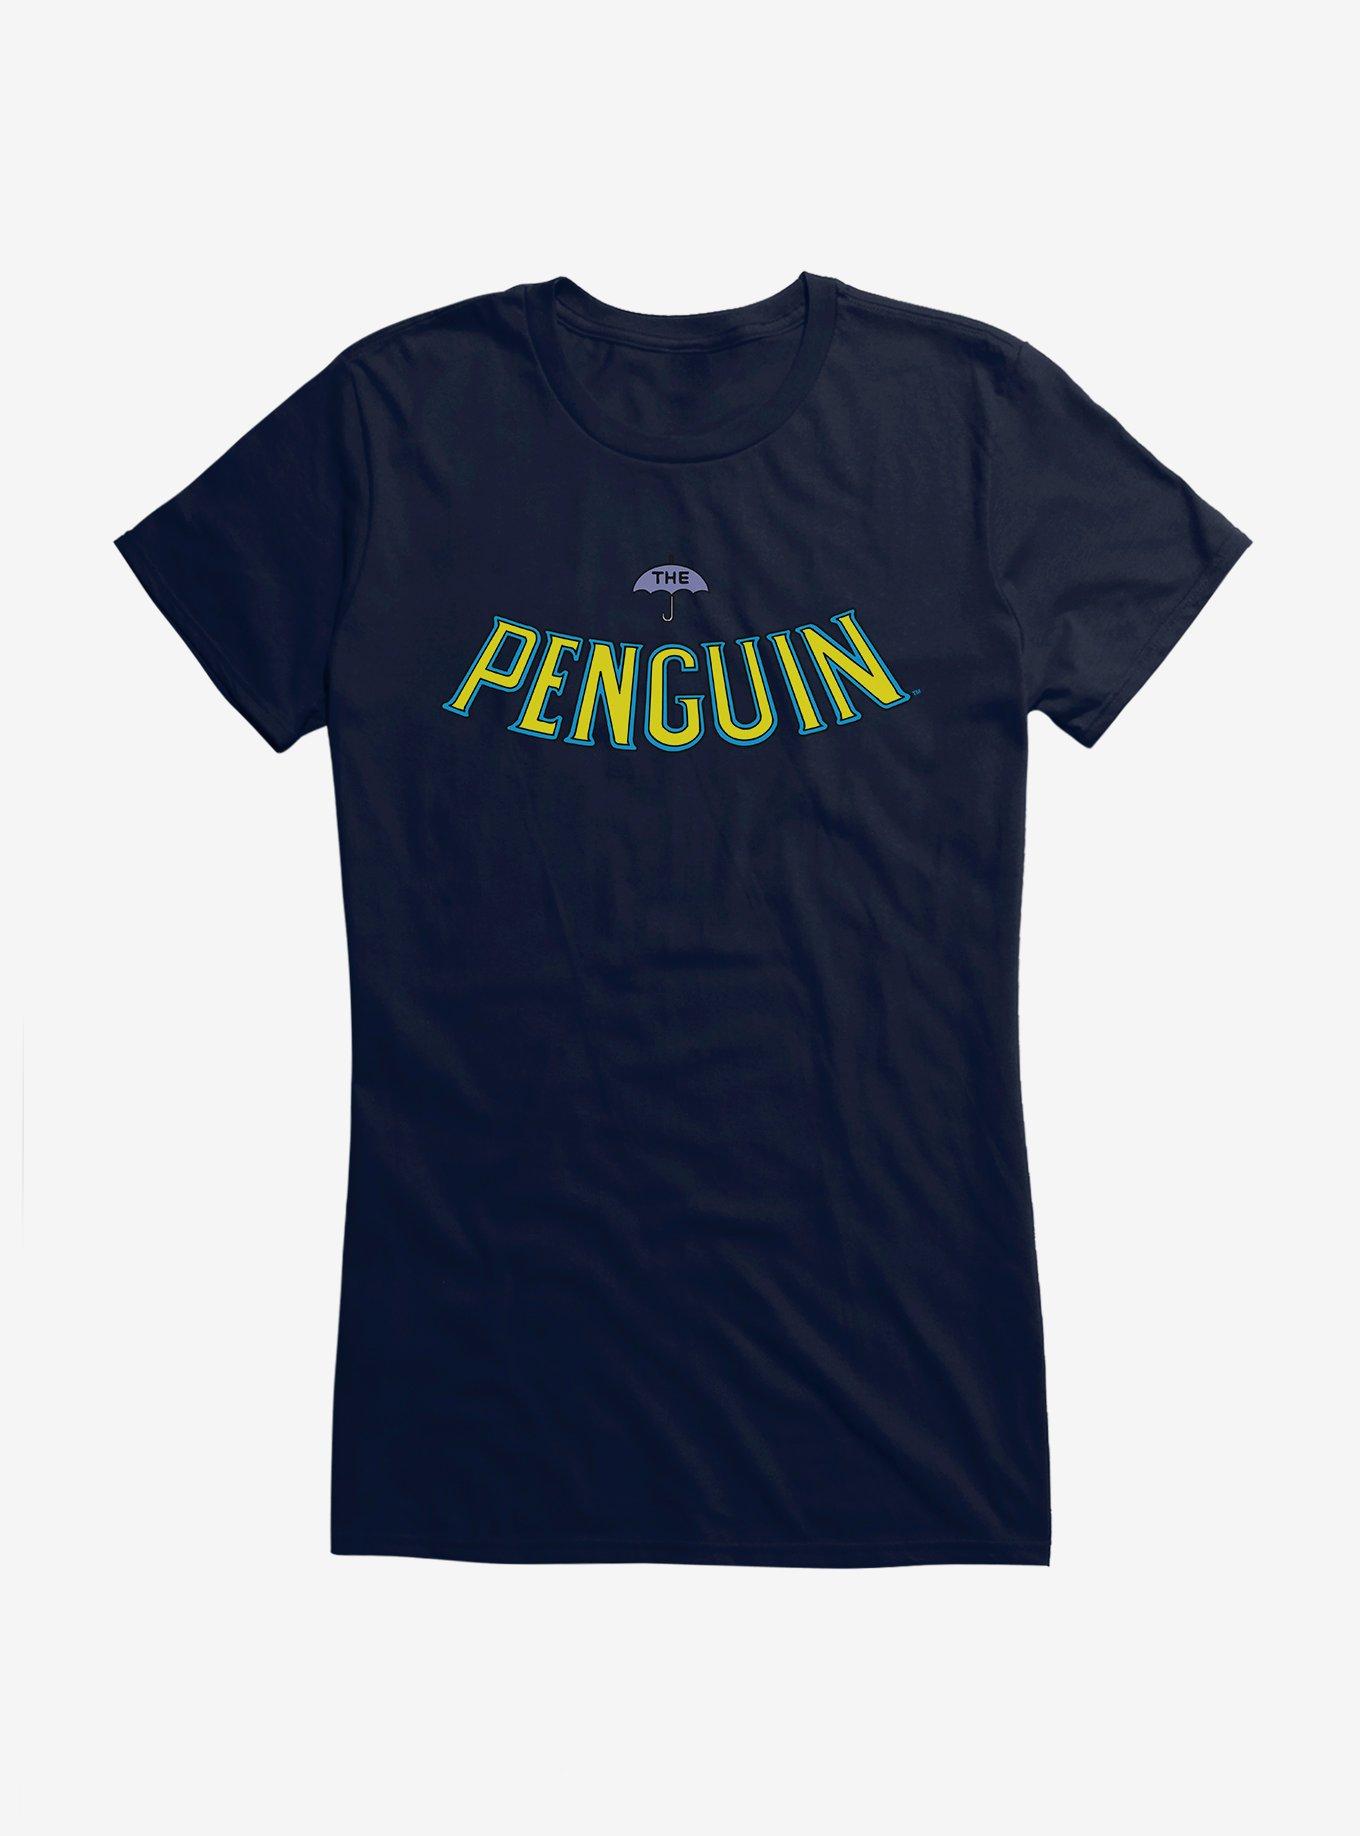 Batman The Penguin Umbrella Logo Girls T-Shirt, NAVY, hi-res